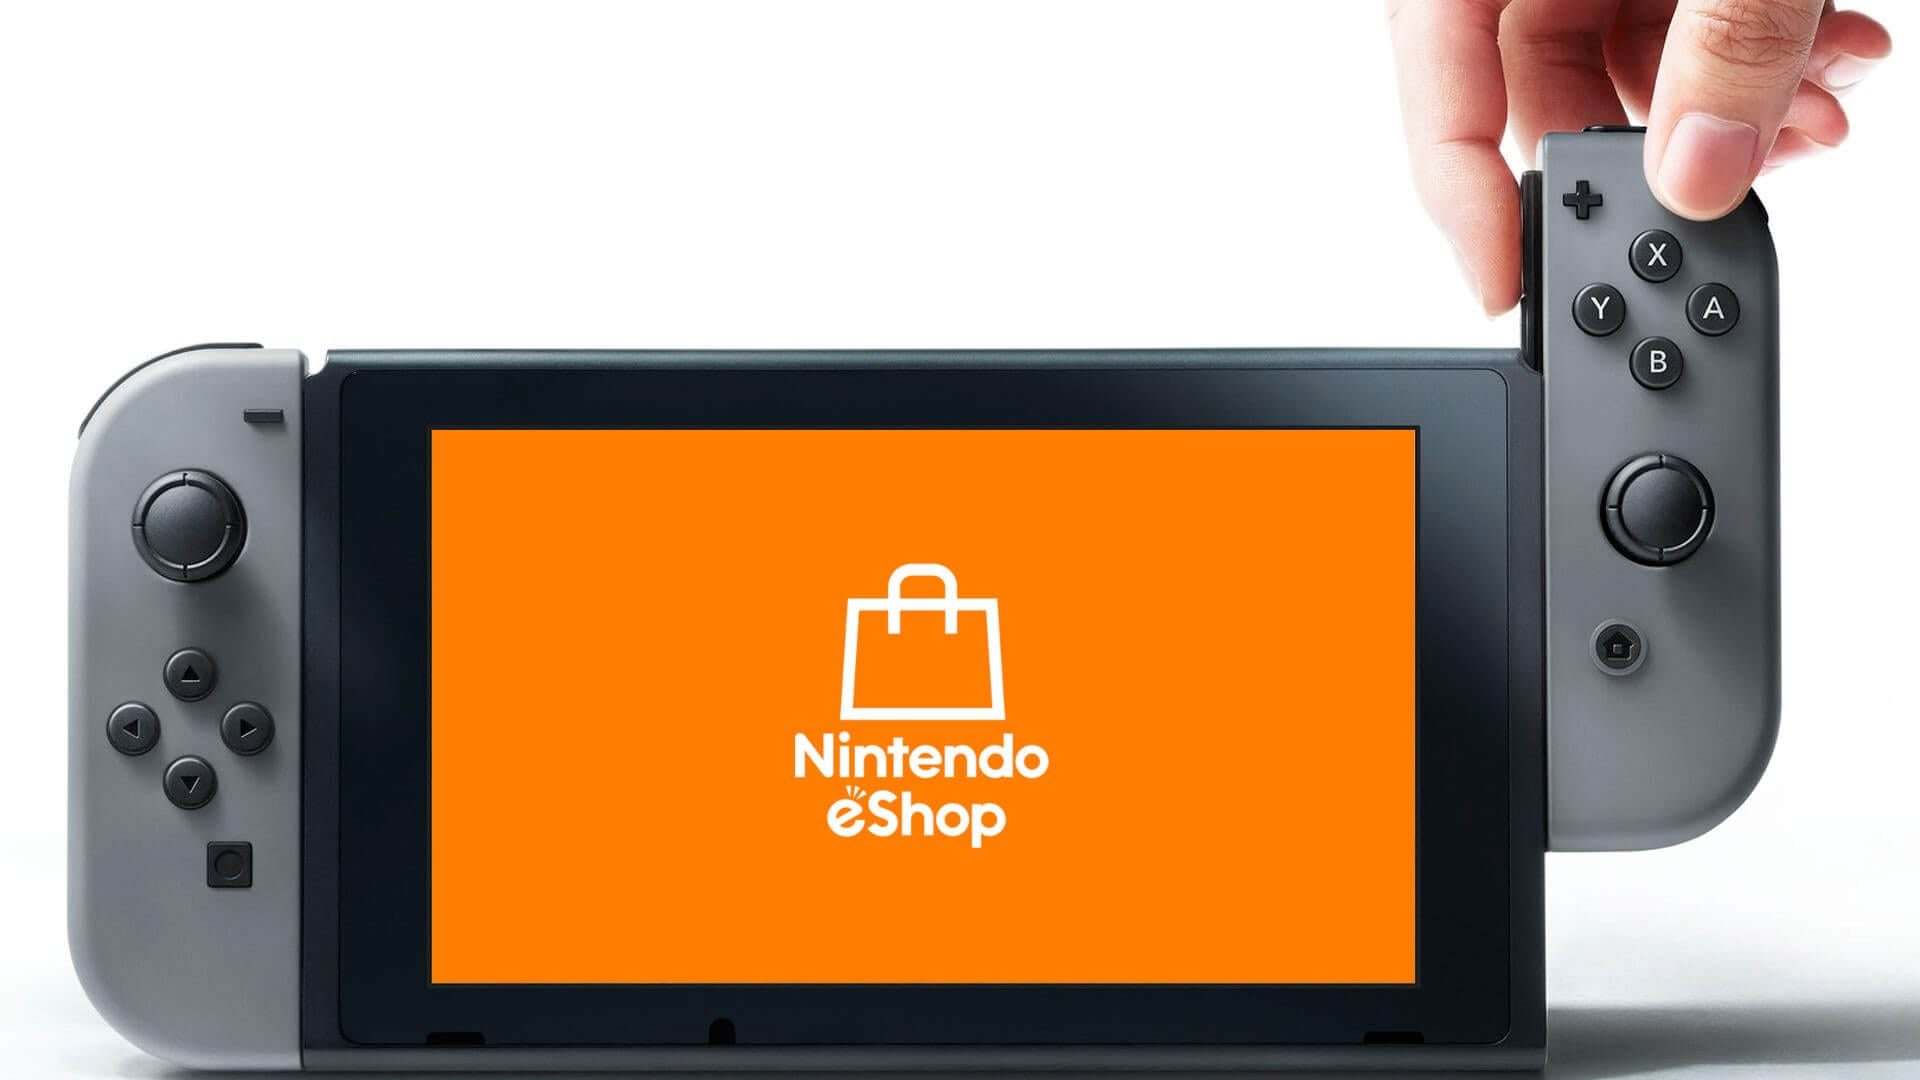 A Nintendo Switch showing the Nintendo eShop logo